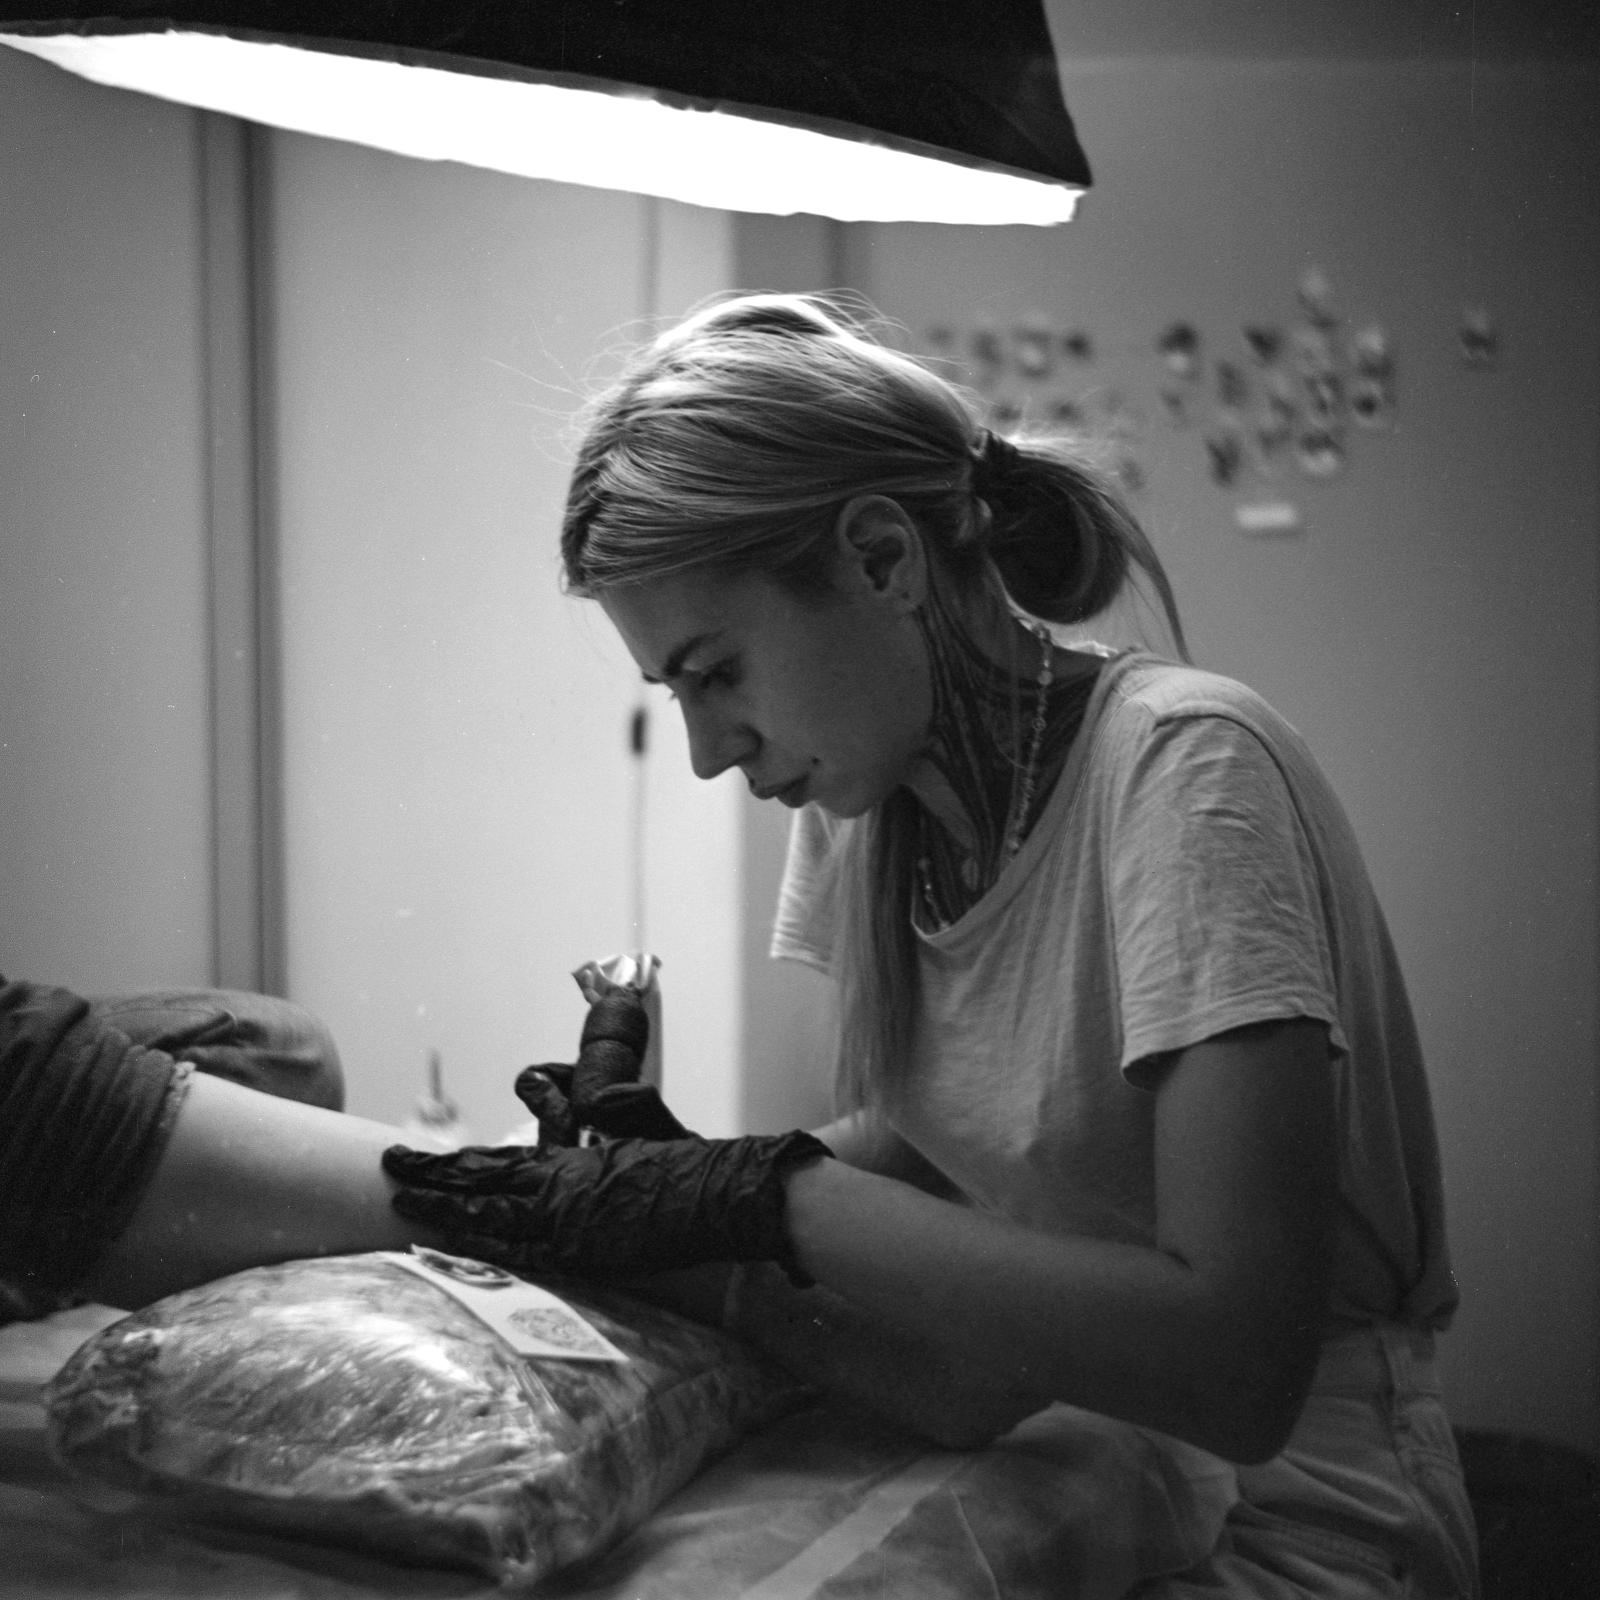 О микрореализме в татуировках, «неженской» профессии и заработках опытных мастеров в интервью с татуировщицей Анной Селезневой 